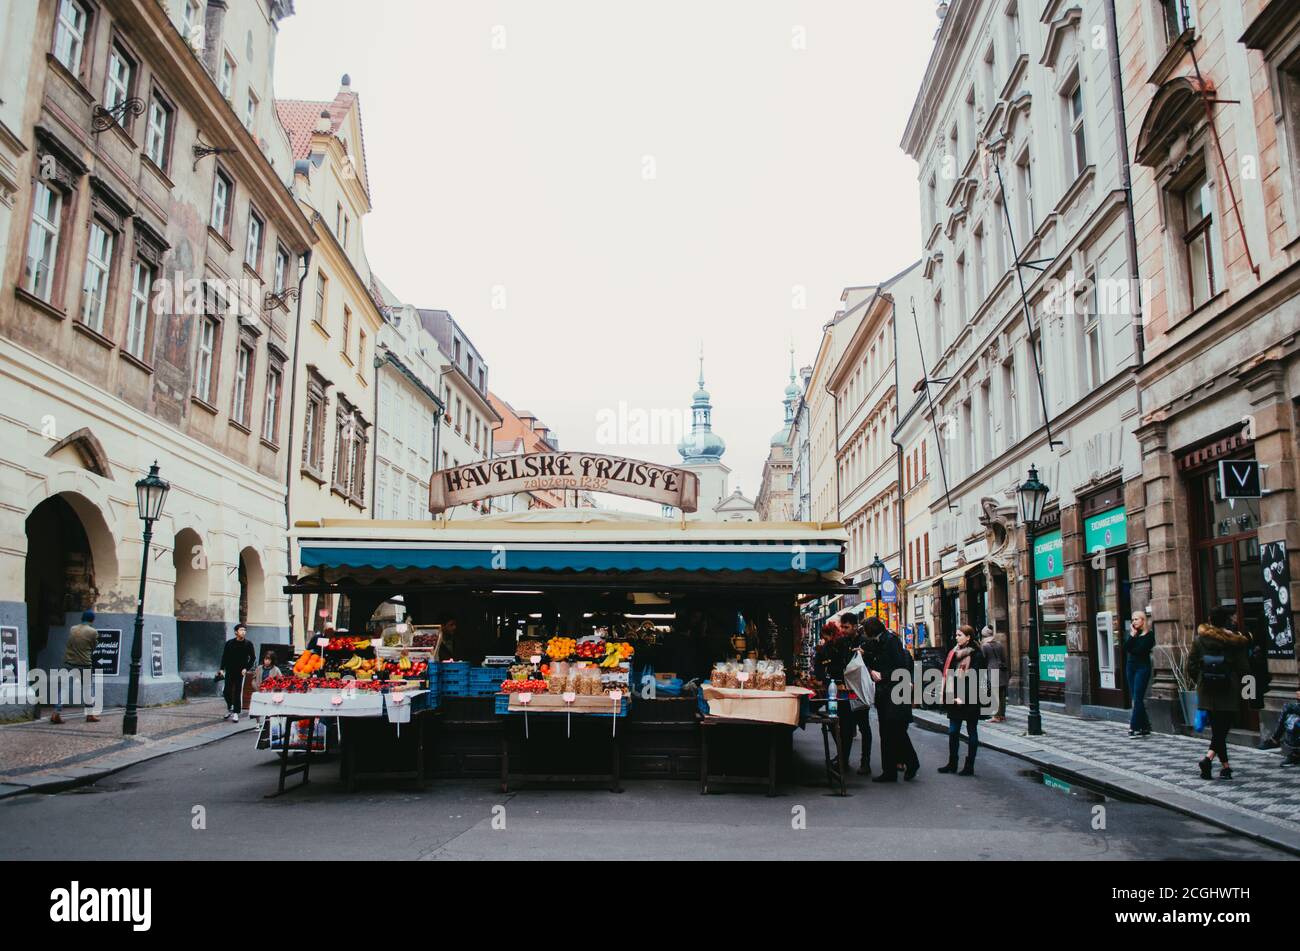 Prag, Tschechien - Vorderansicht des Havelské tržiště, dem ältesten Markt der Hauptstadt, mit Kiosken, die Obst und Getreide bei einigen Kunden verkaufen Stockfoto